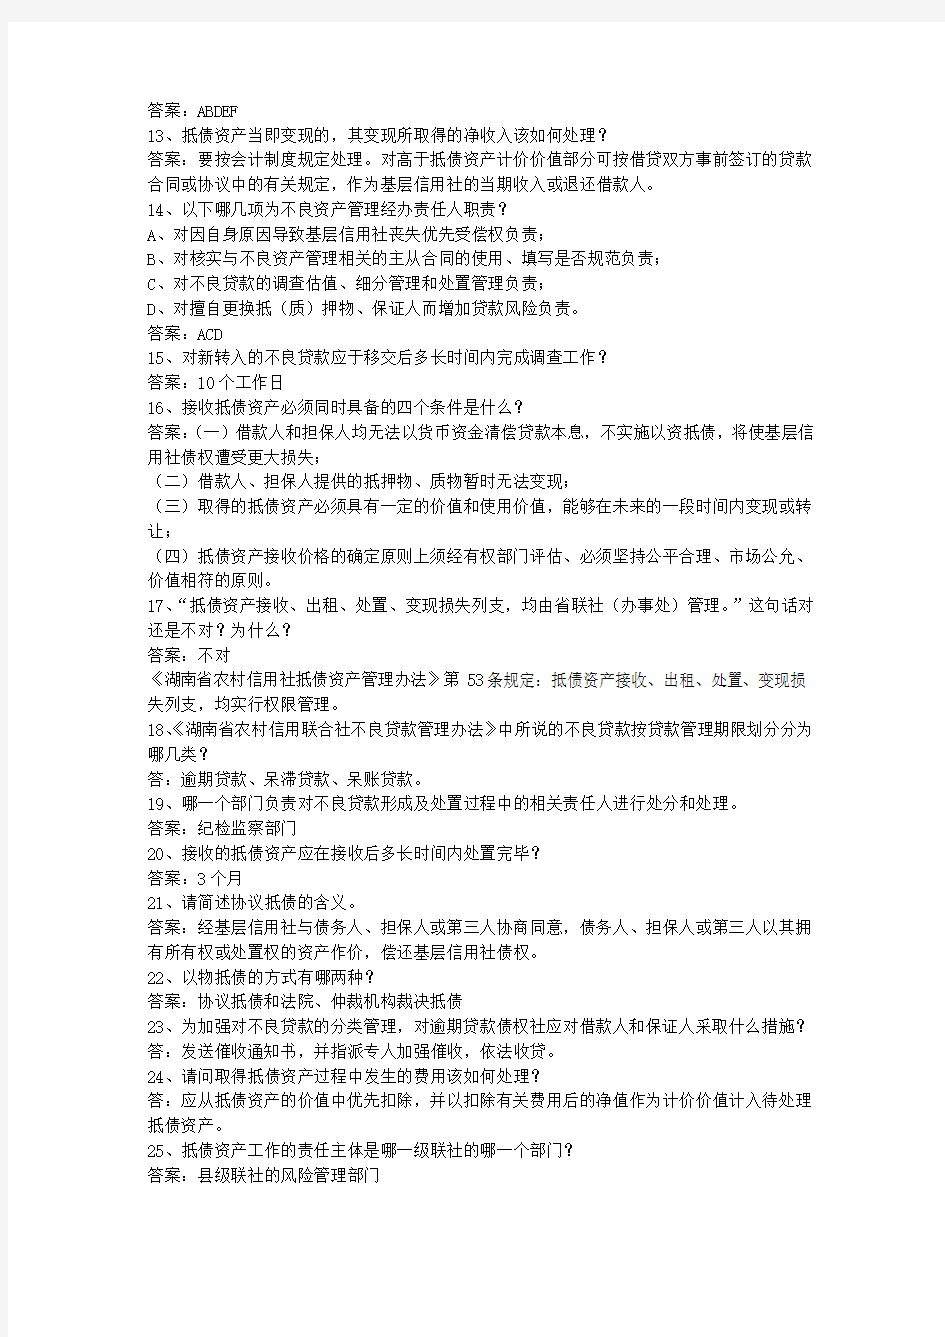 2014海南省农村信用社考试历年考试答题技巧